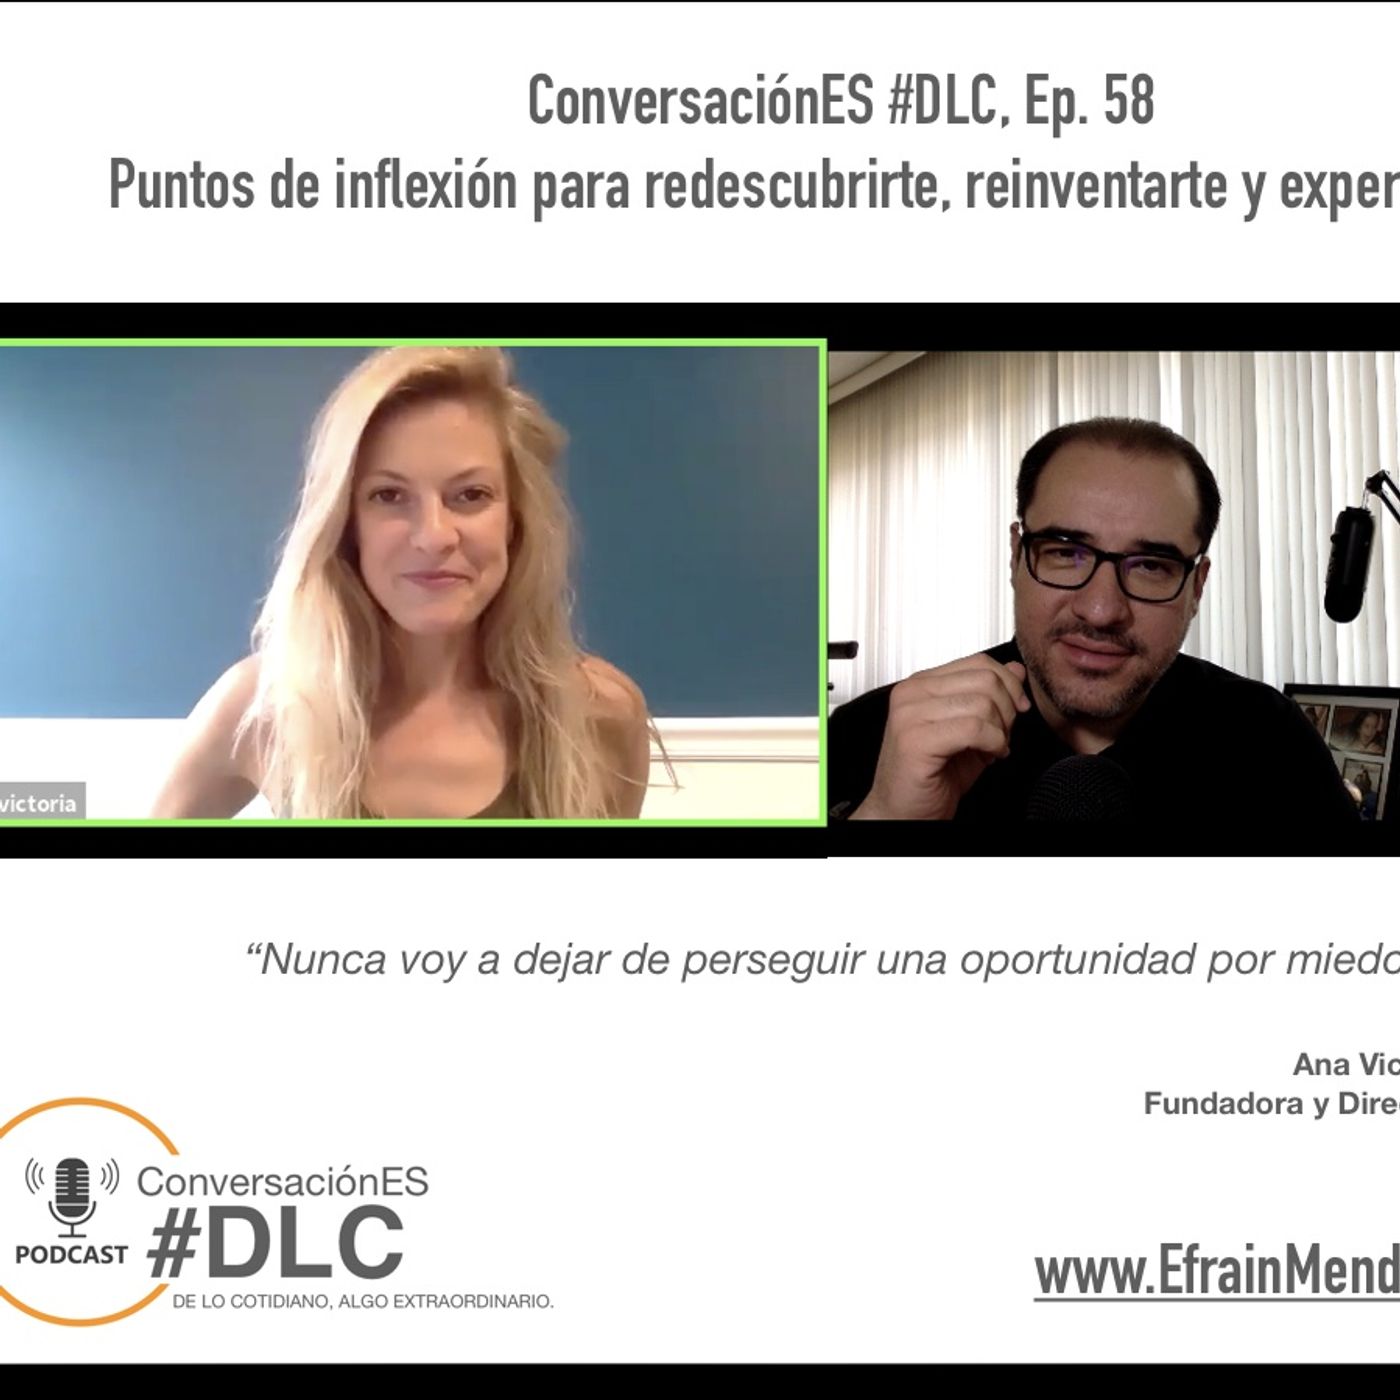 Episodio 58 - ConversaciónES #DLC con Ana Victoria García Álvarez